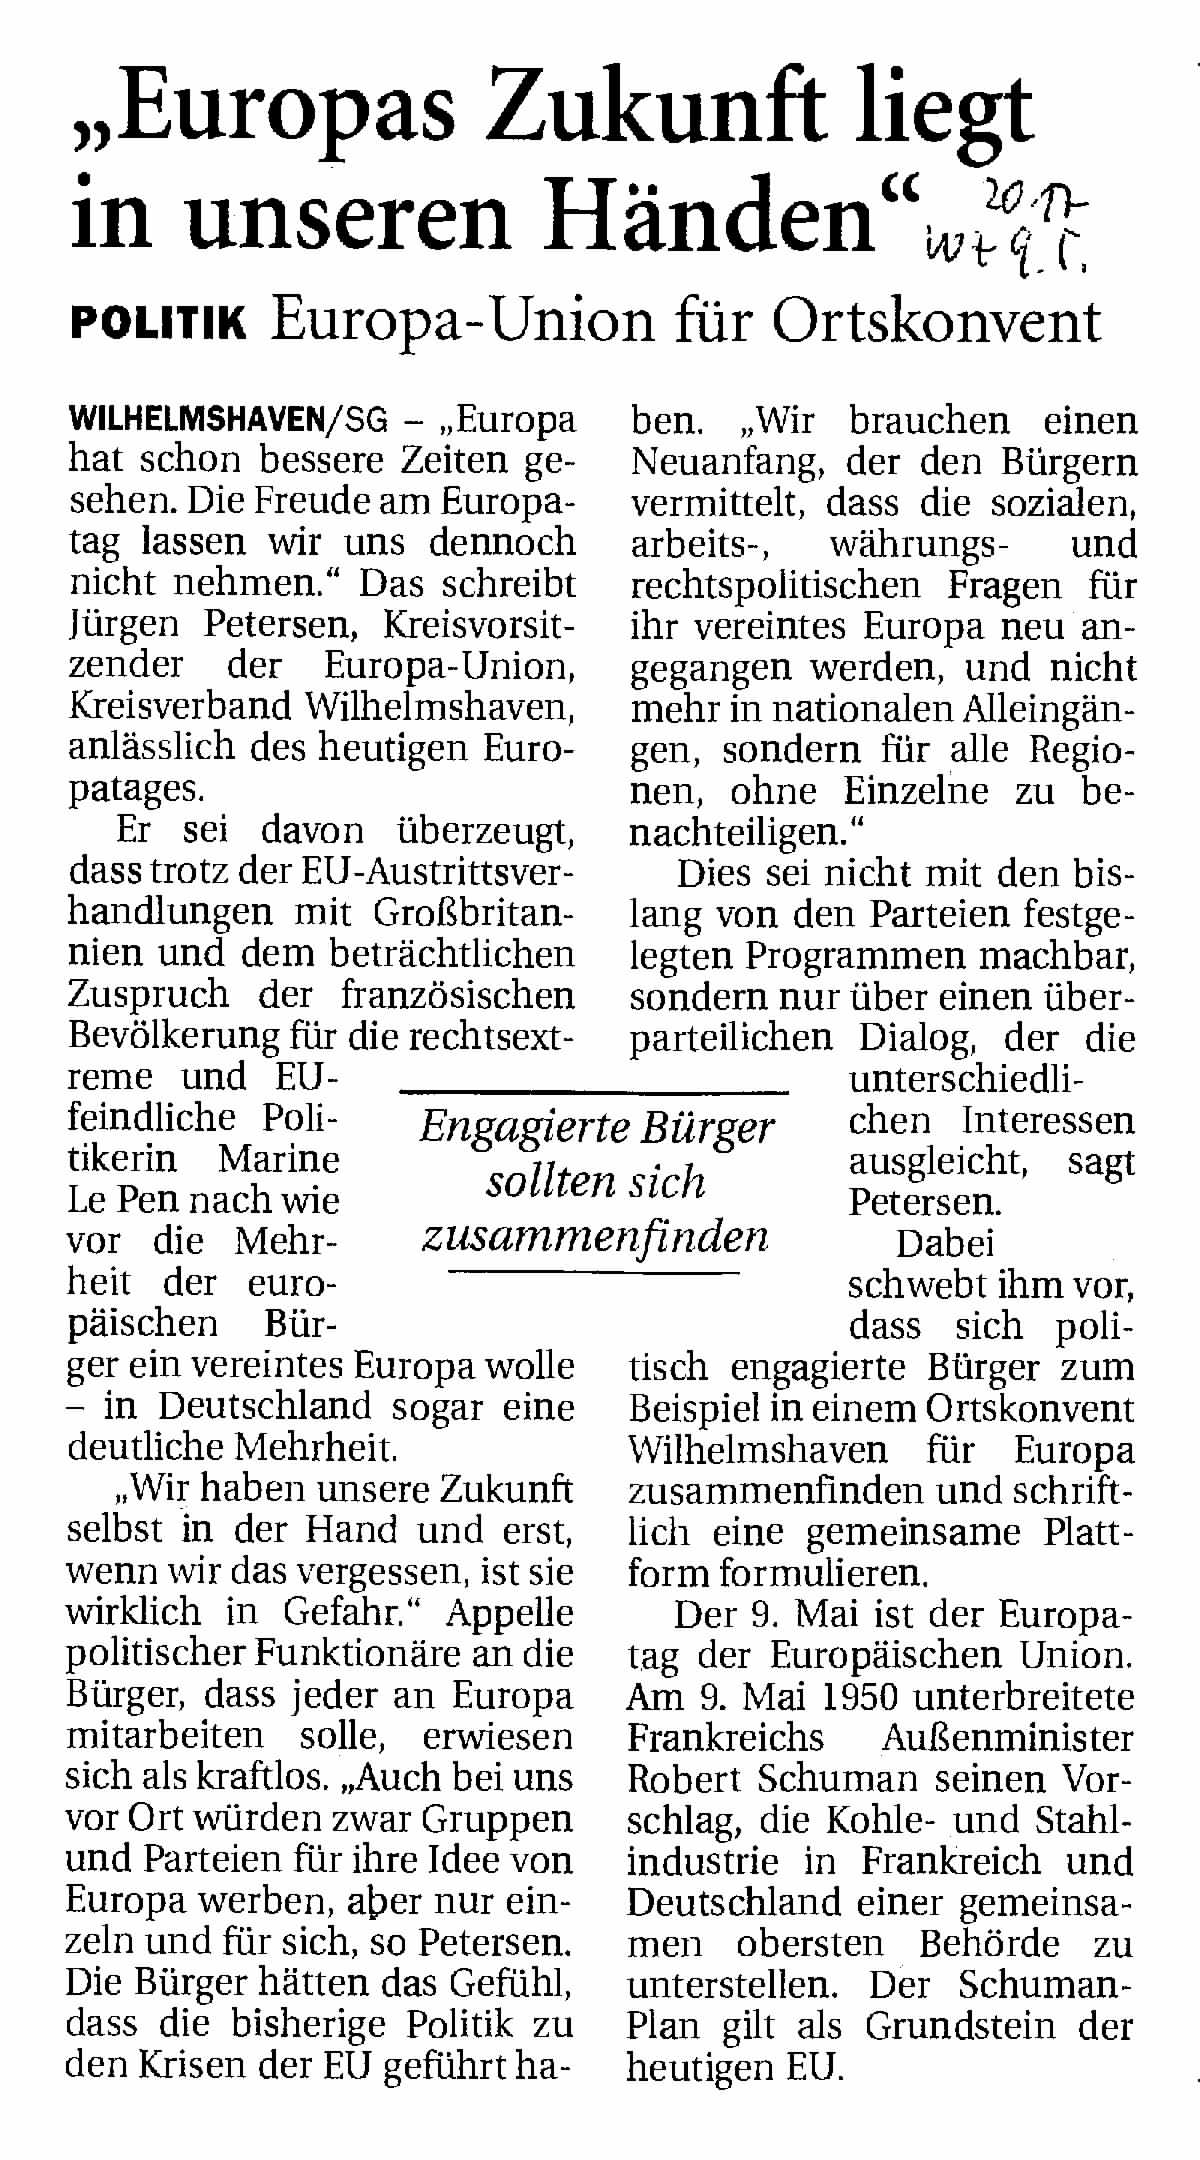 Wilhelmshavener Zeitung vom 9. Mai 2017